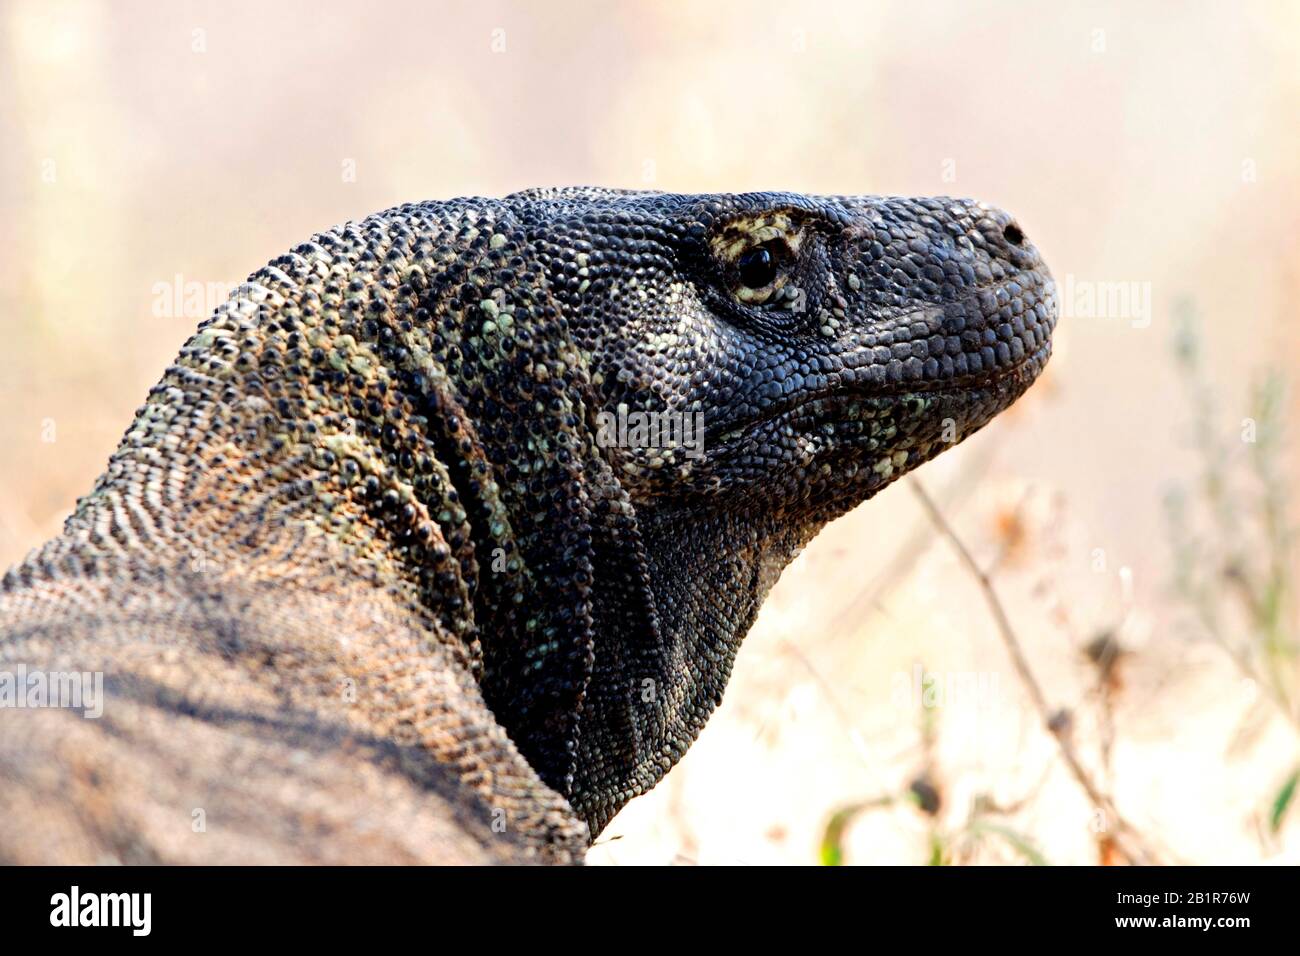 Komodo dragon, Komodo monitor, ora (Varanus komodoensis), portrait, Indonesia Stock Photo